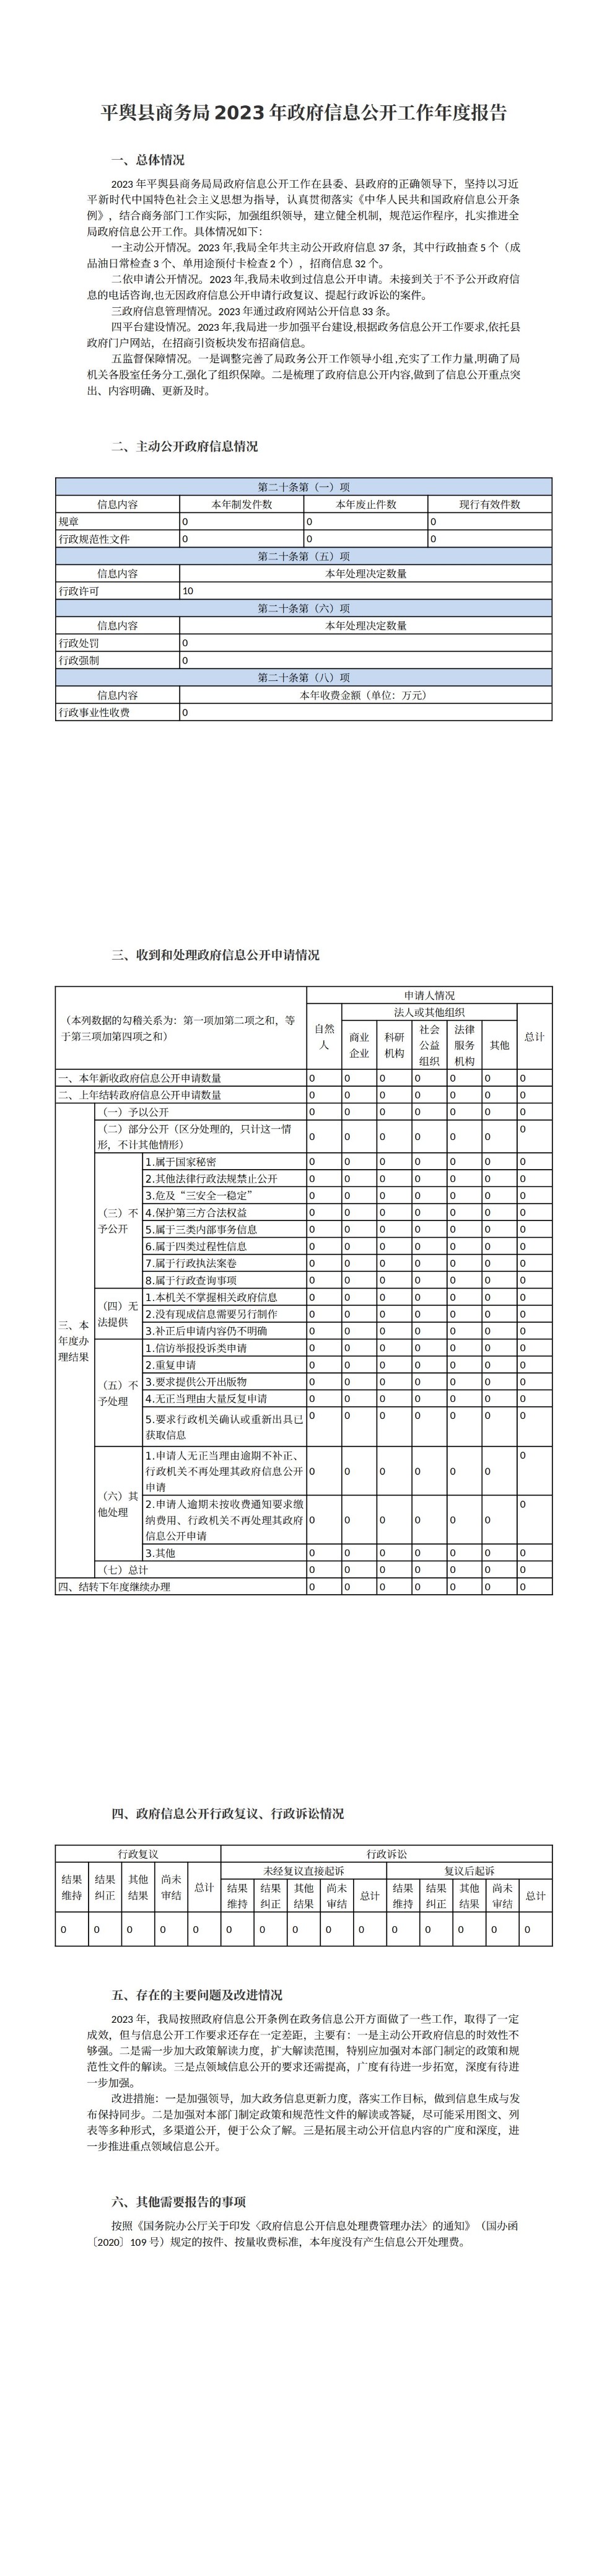 平舆县商务局2023年政府信息公开工作年度报告 (1)_00.jpg